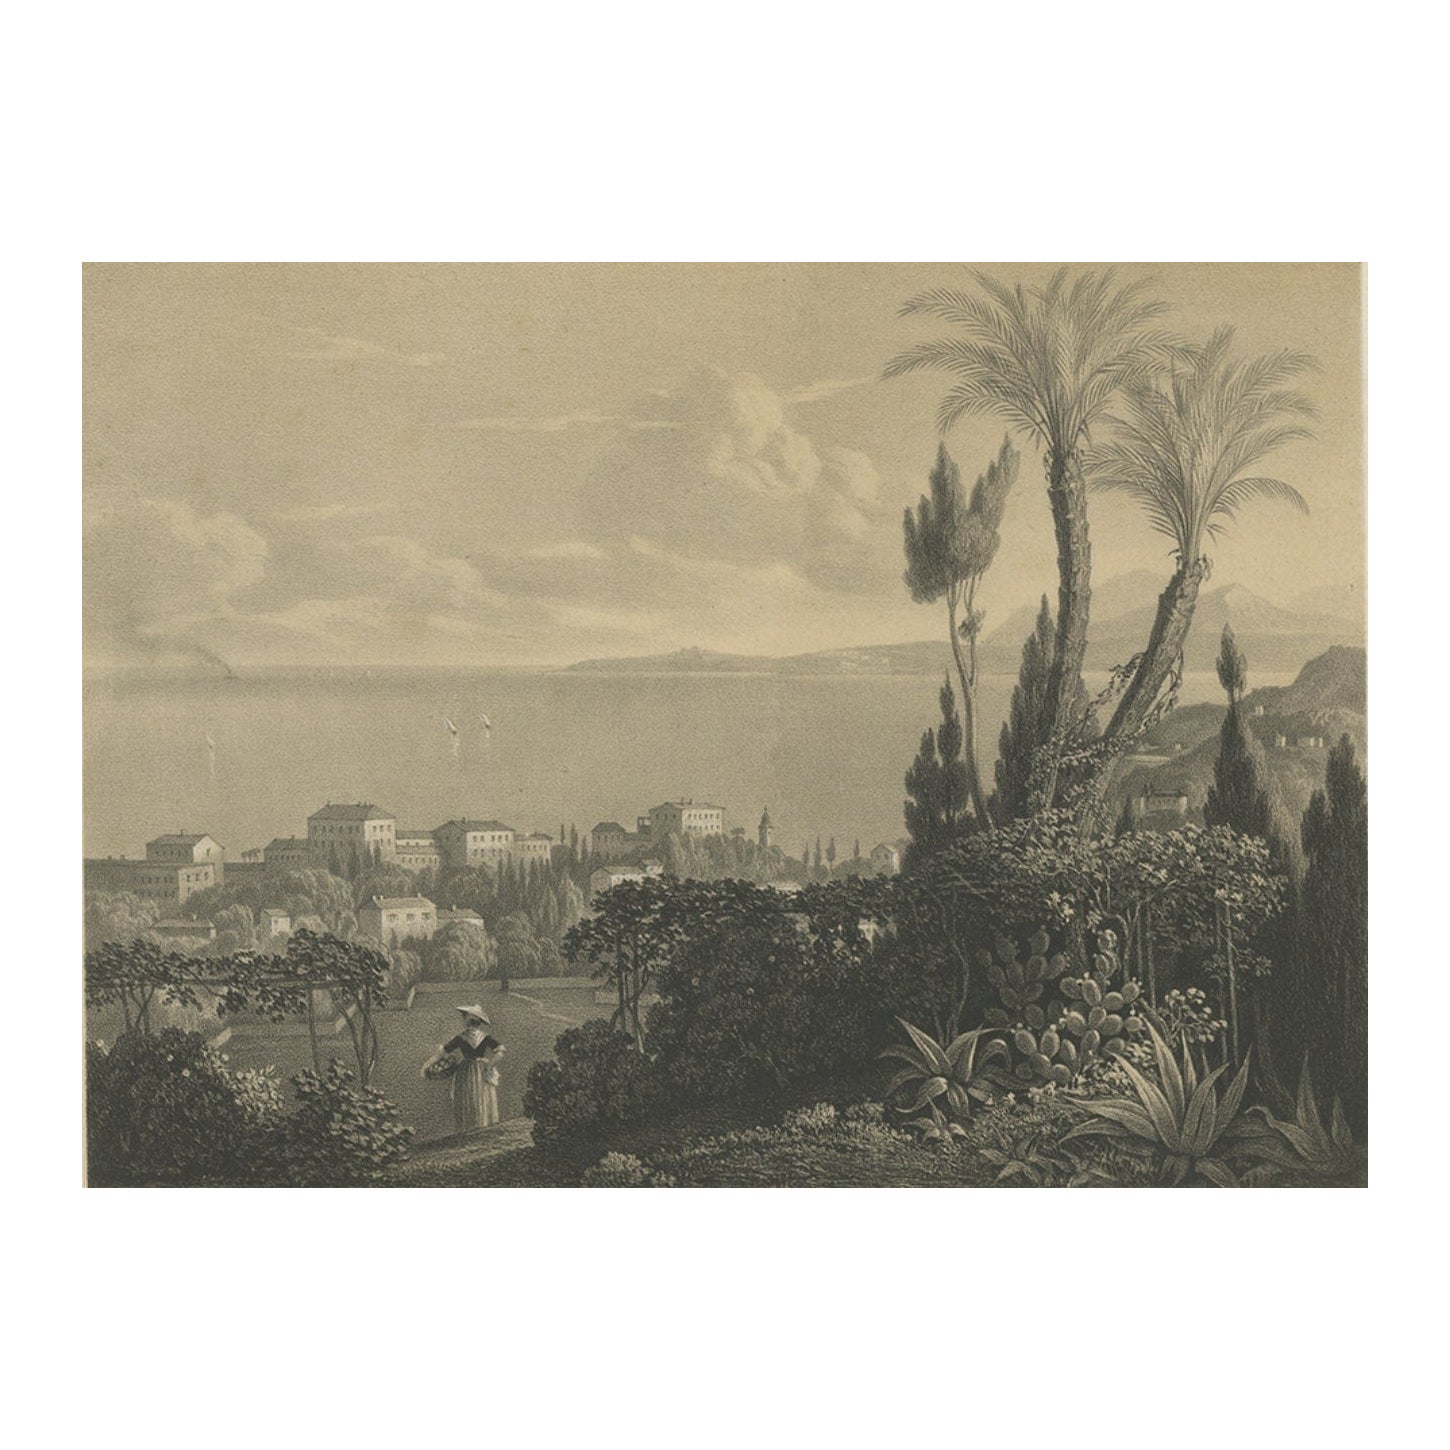 Impression ancienne de la ville de Nice en France, c.1840